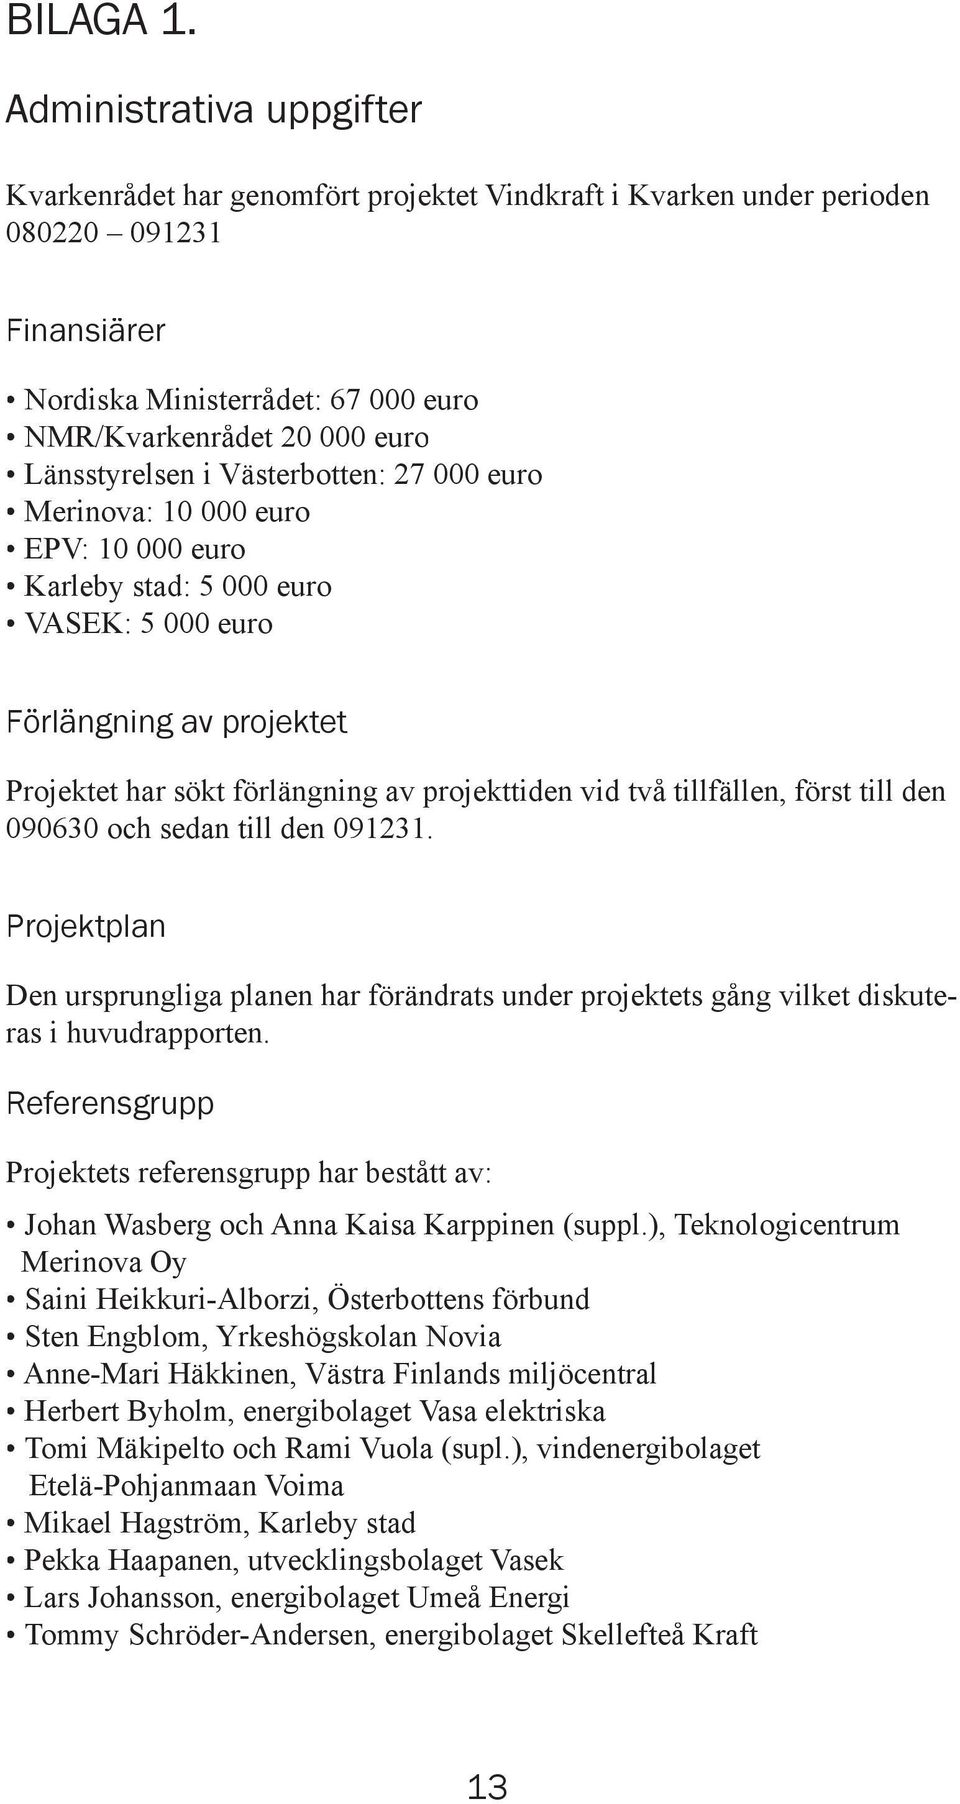 Länsstyrelsen i Västerbotten: 27 000 euro Merinova: 10 000 euro EPV: 10 000 euro Karleby stad: 5 000 euro VASEK: 5 000 euro Förlängning av projektet Projektet har sökt förlängning av projekttiden vid